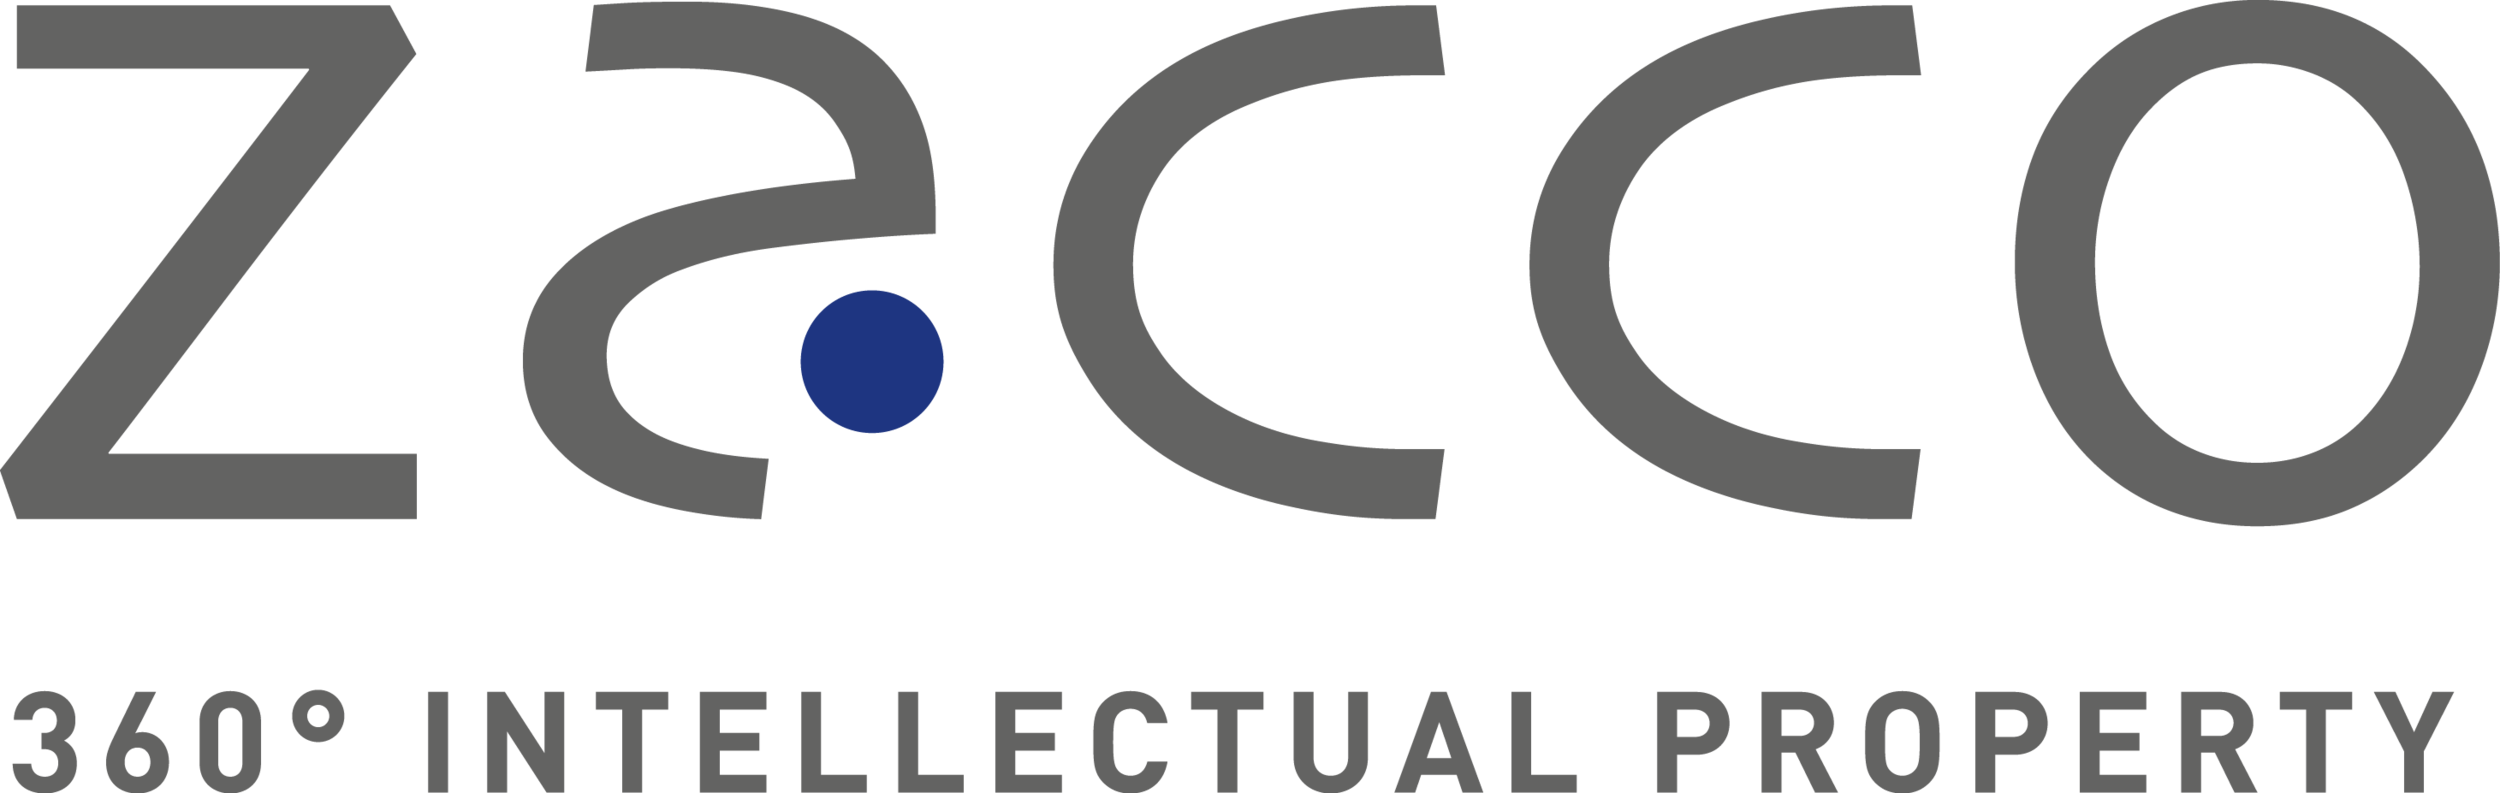 zacco-logo.png